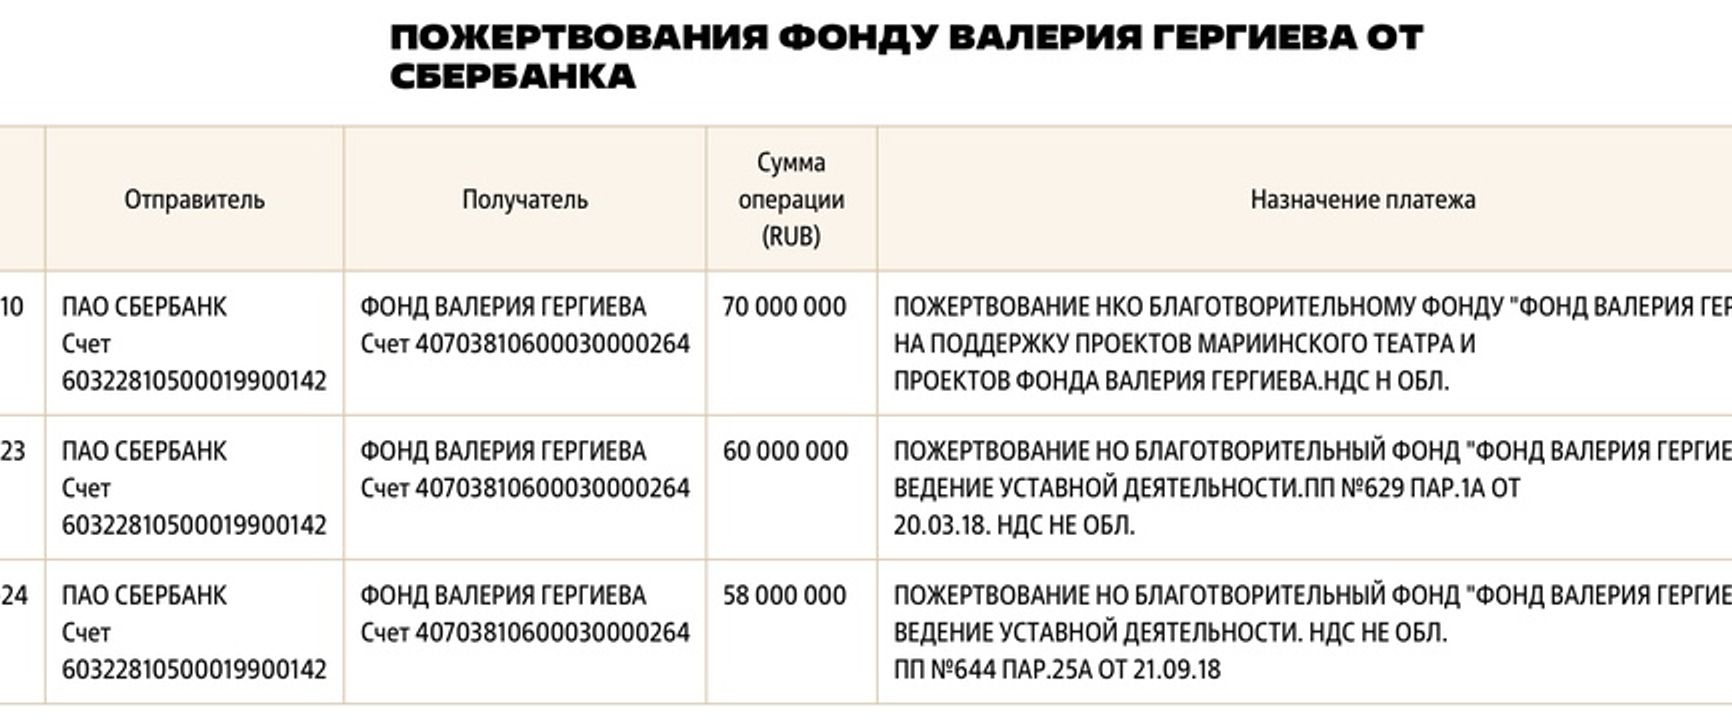 Доверенное лицо Путина Гергиев использует благотворительный фонд с деньгами госкомпаний как личный кошелек — расследование